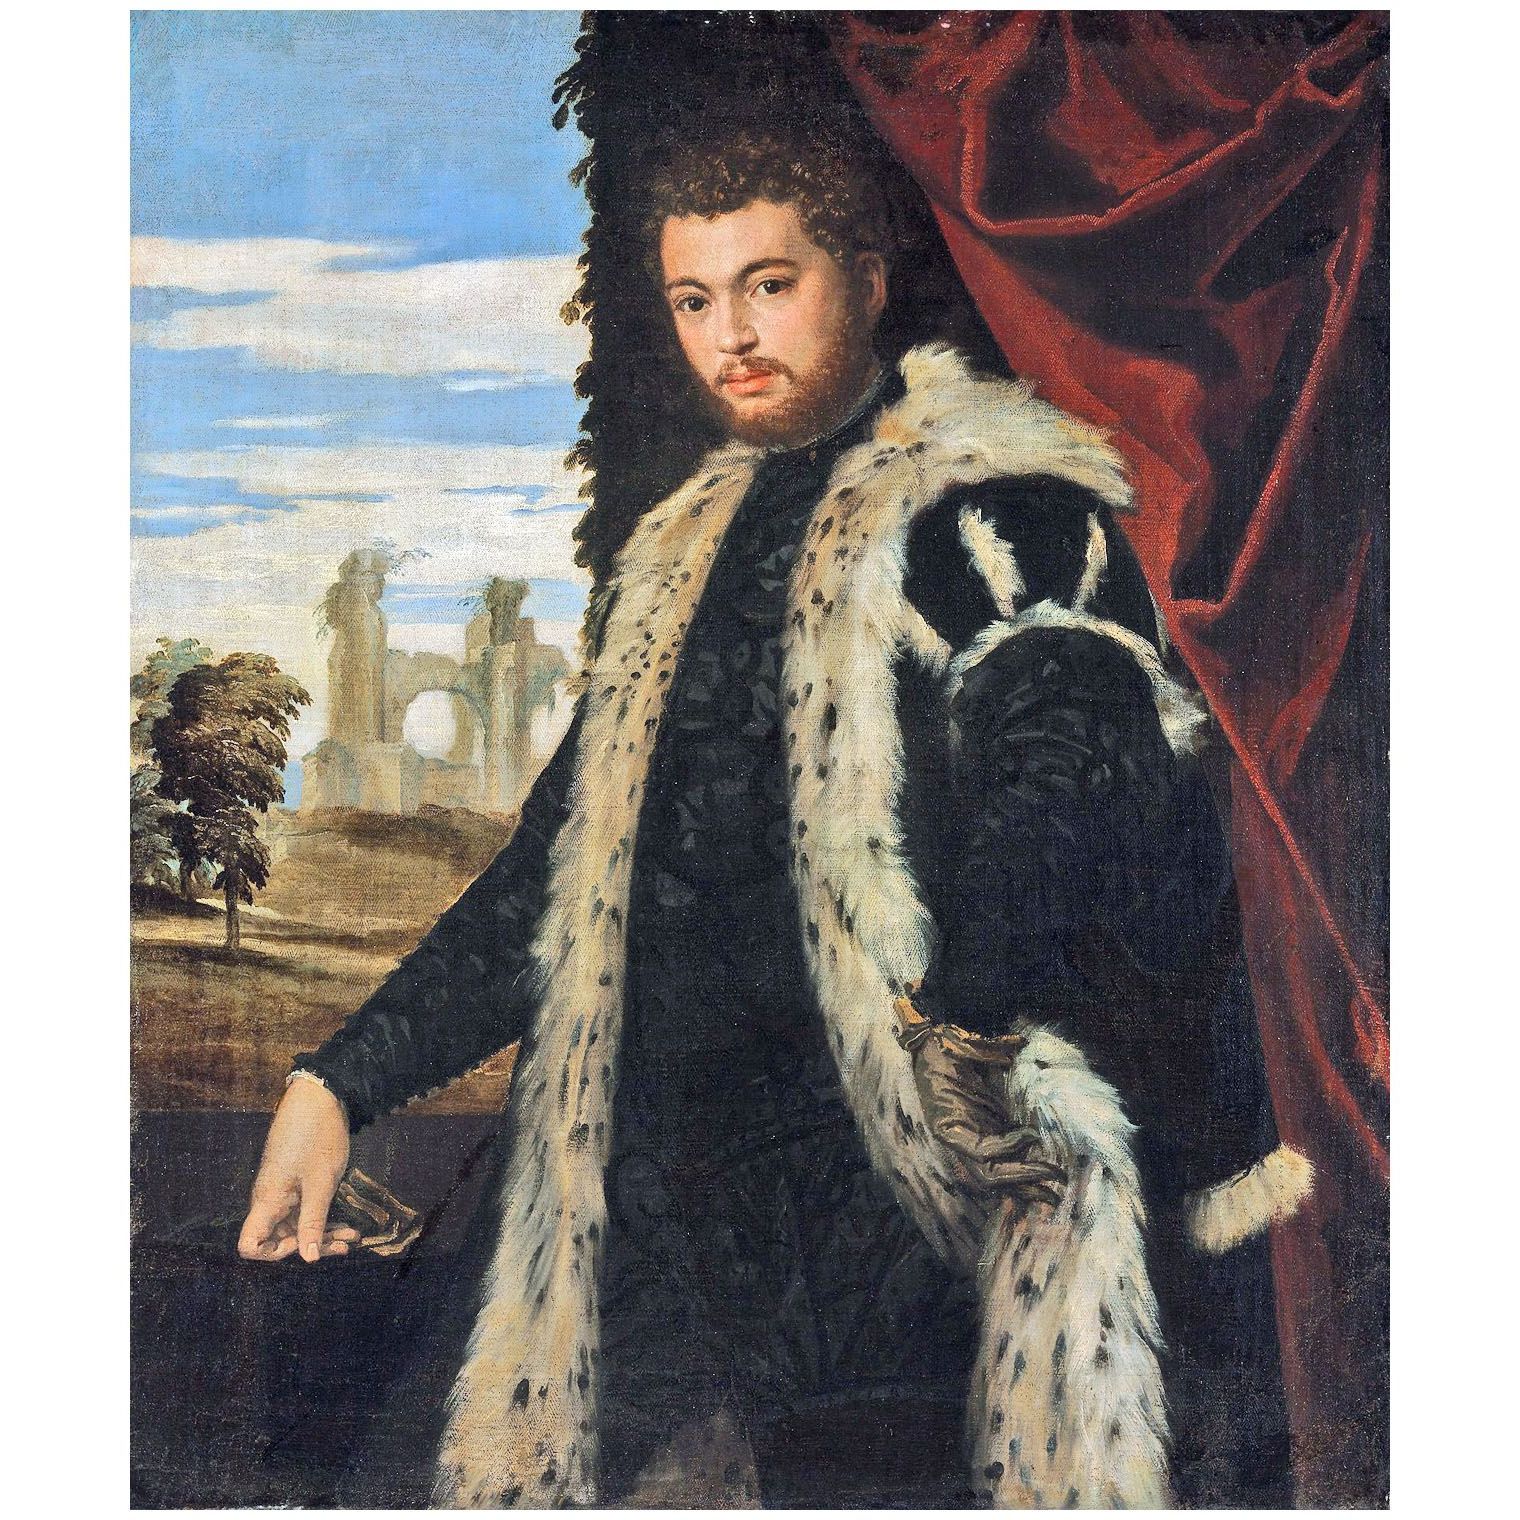 Paolo Veronese. Ritratto di giovane uomo. 1555. KHM Wien